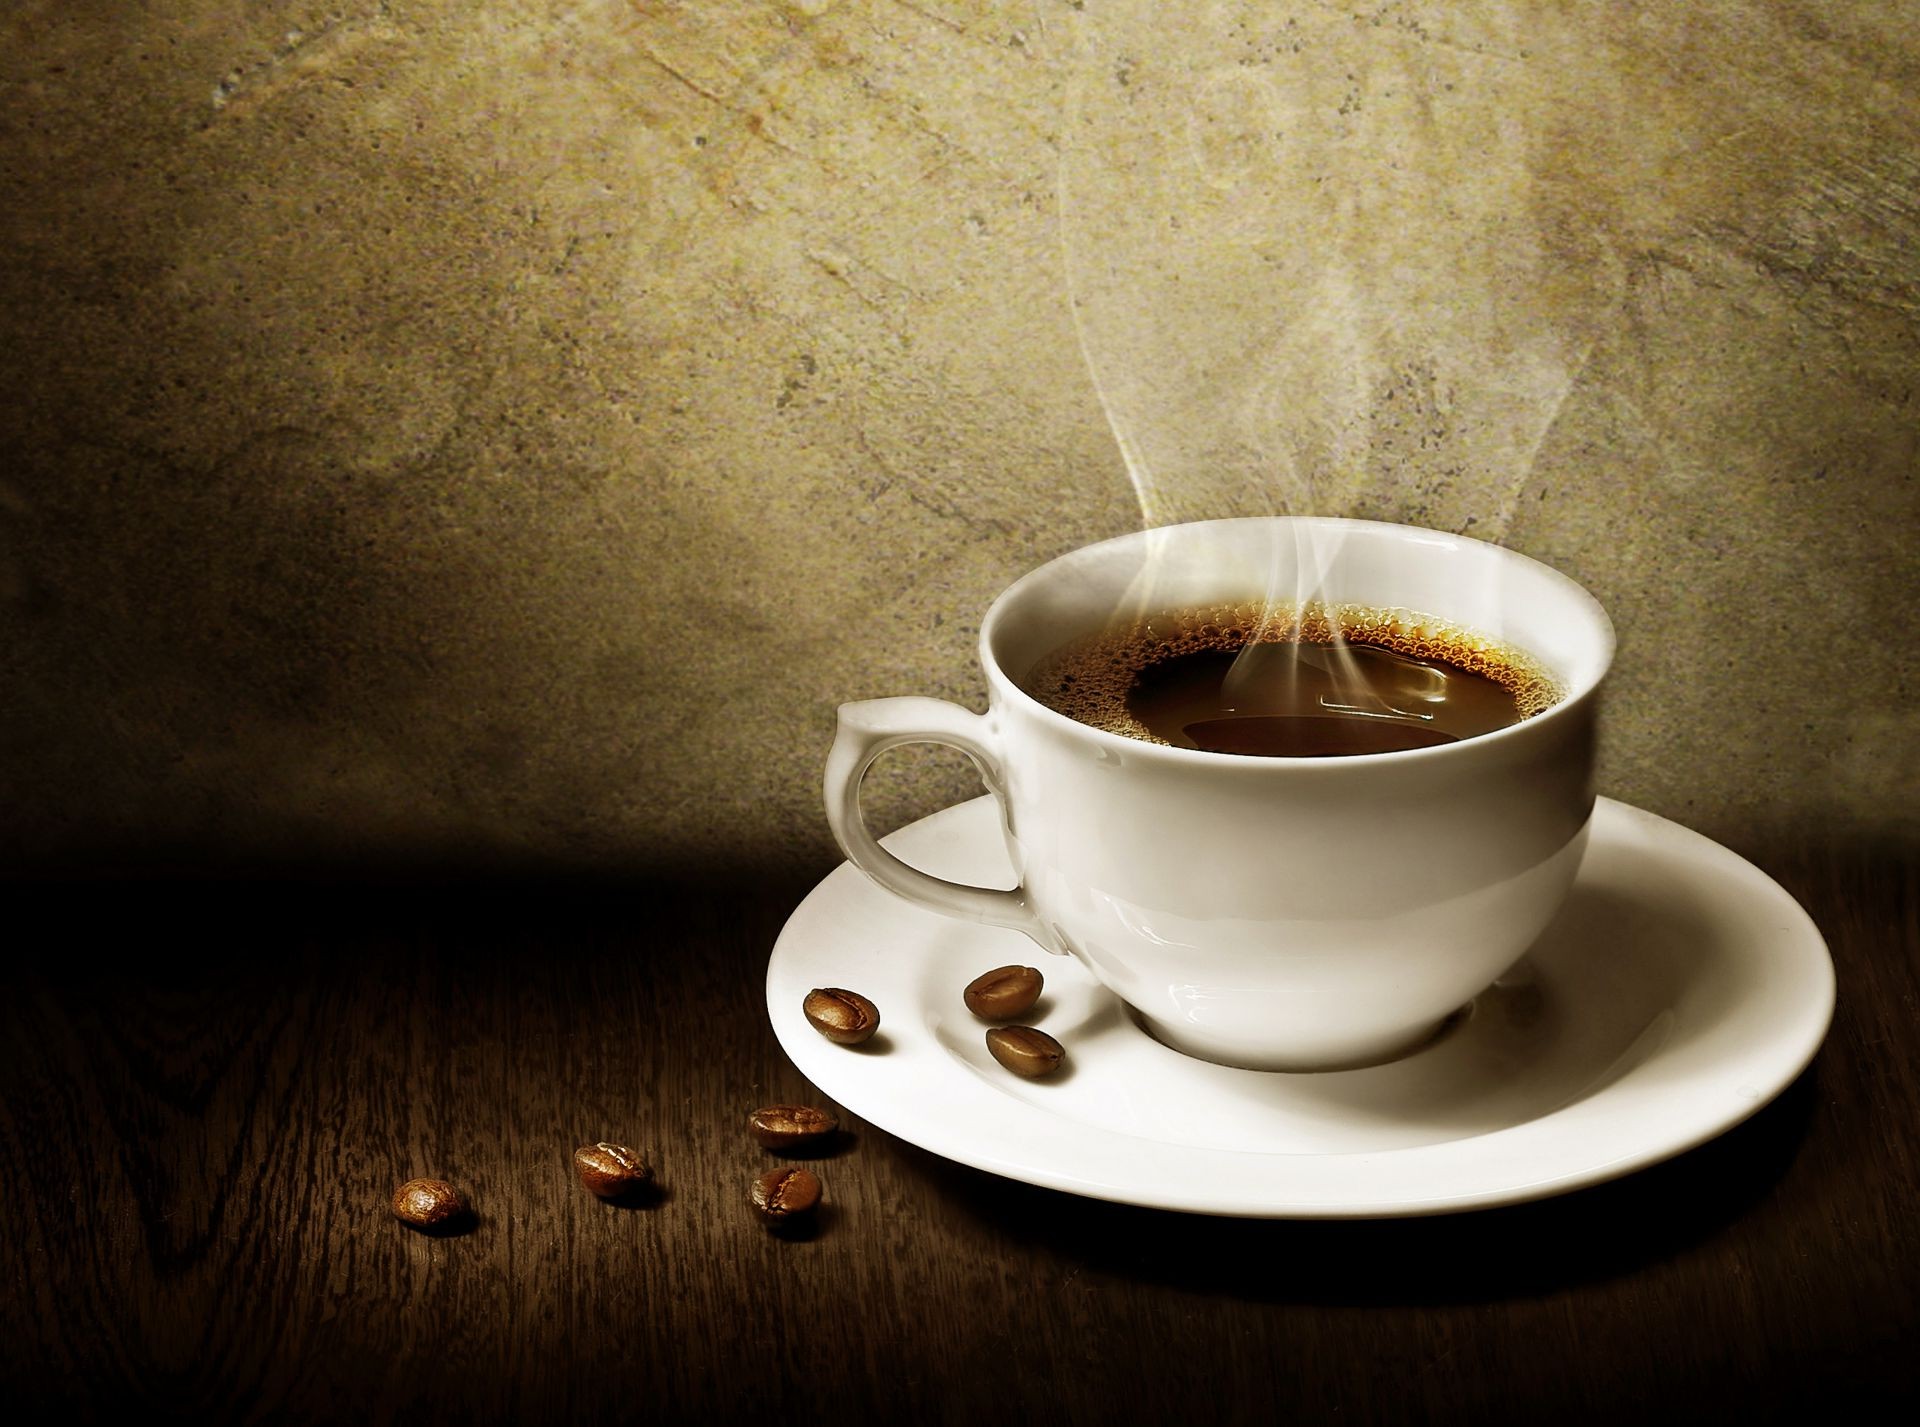 кофе пить эспрессо кубок горячая кофеин рассвет капучино завтрак кружка блюдце темный еда фасоли натюрморт духи чашка кофе таблица кофе